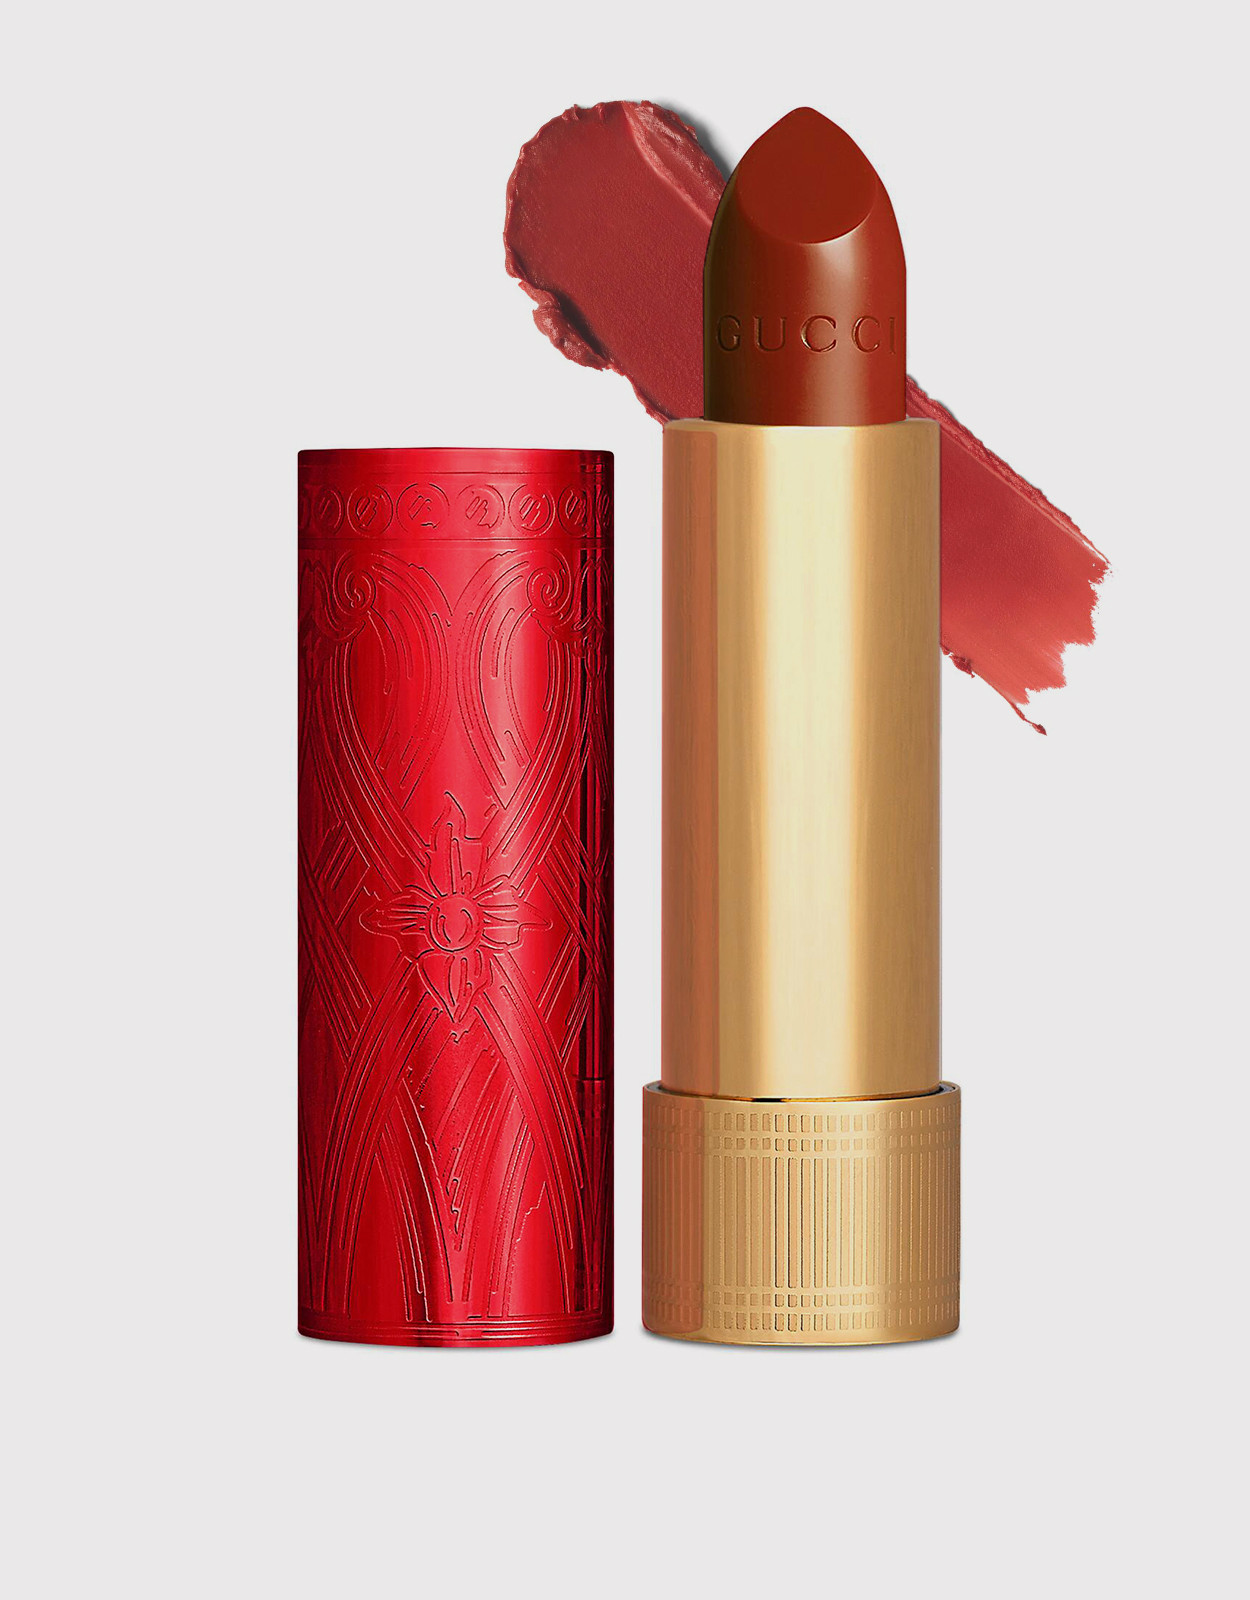 Son Gucci 505 Janet Rust, Rouge à Lèvres Satin Lipstick vỏ đỏ limited